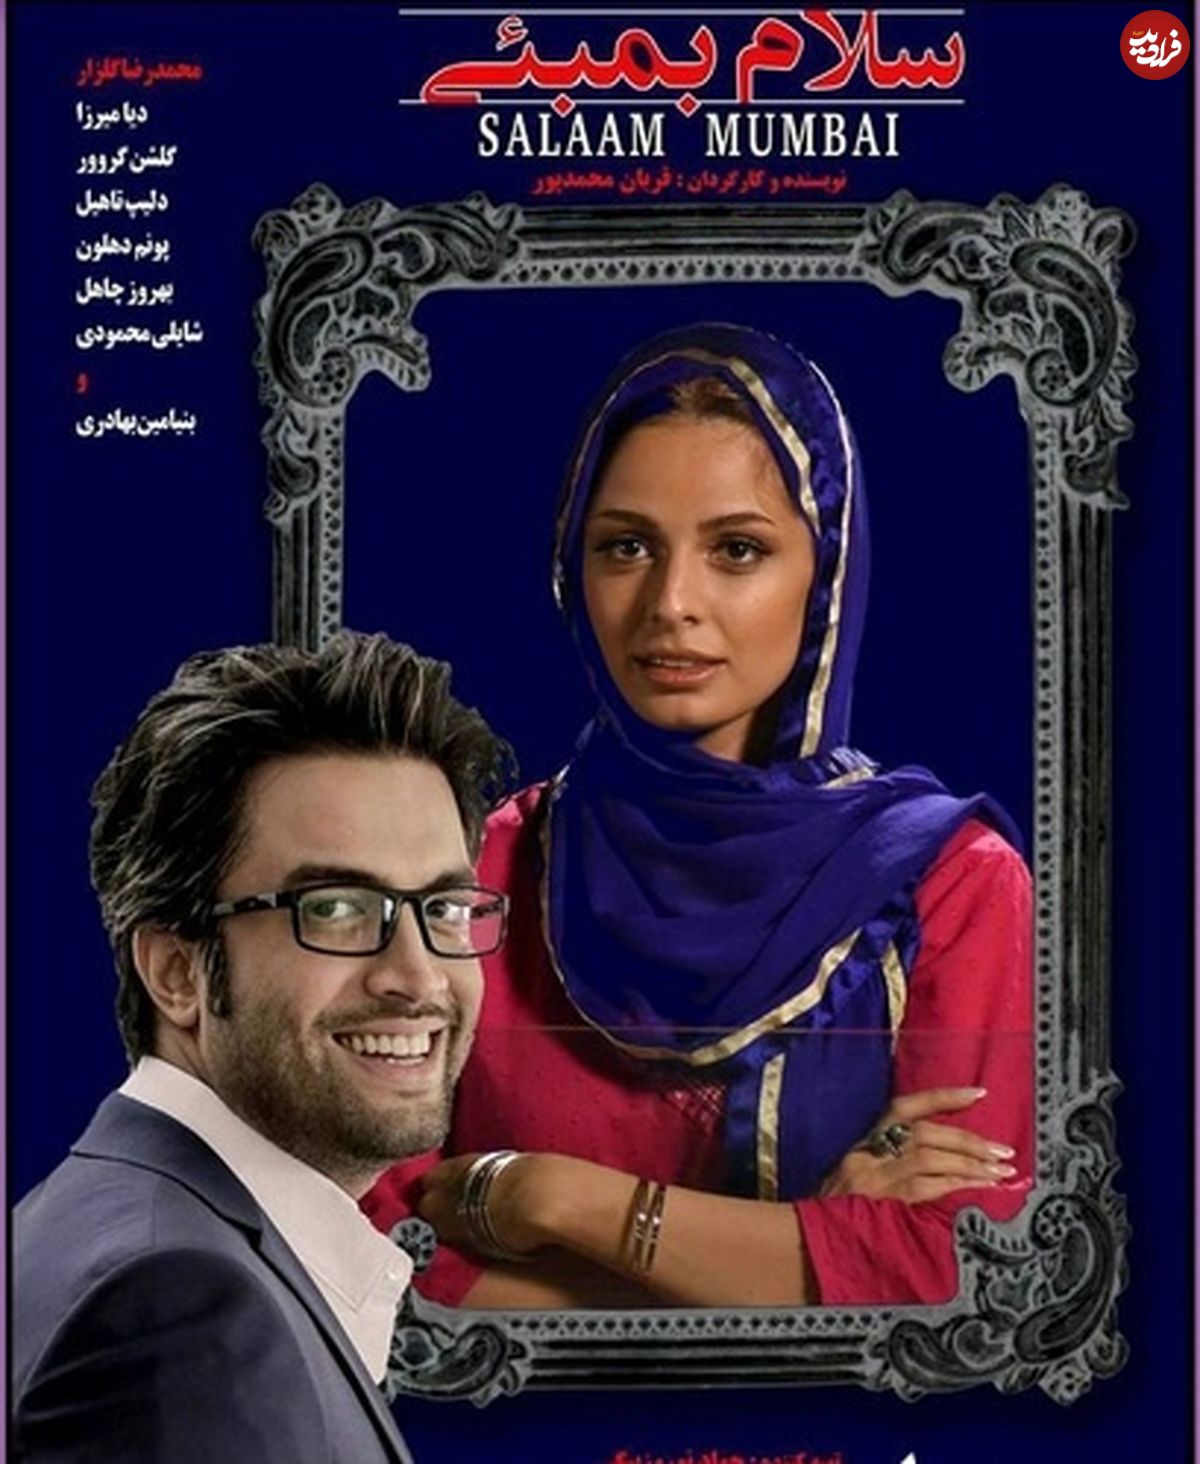 عکس/ بنیامین و همسرش در پوستر فیلم «سلام بمبئی»